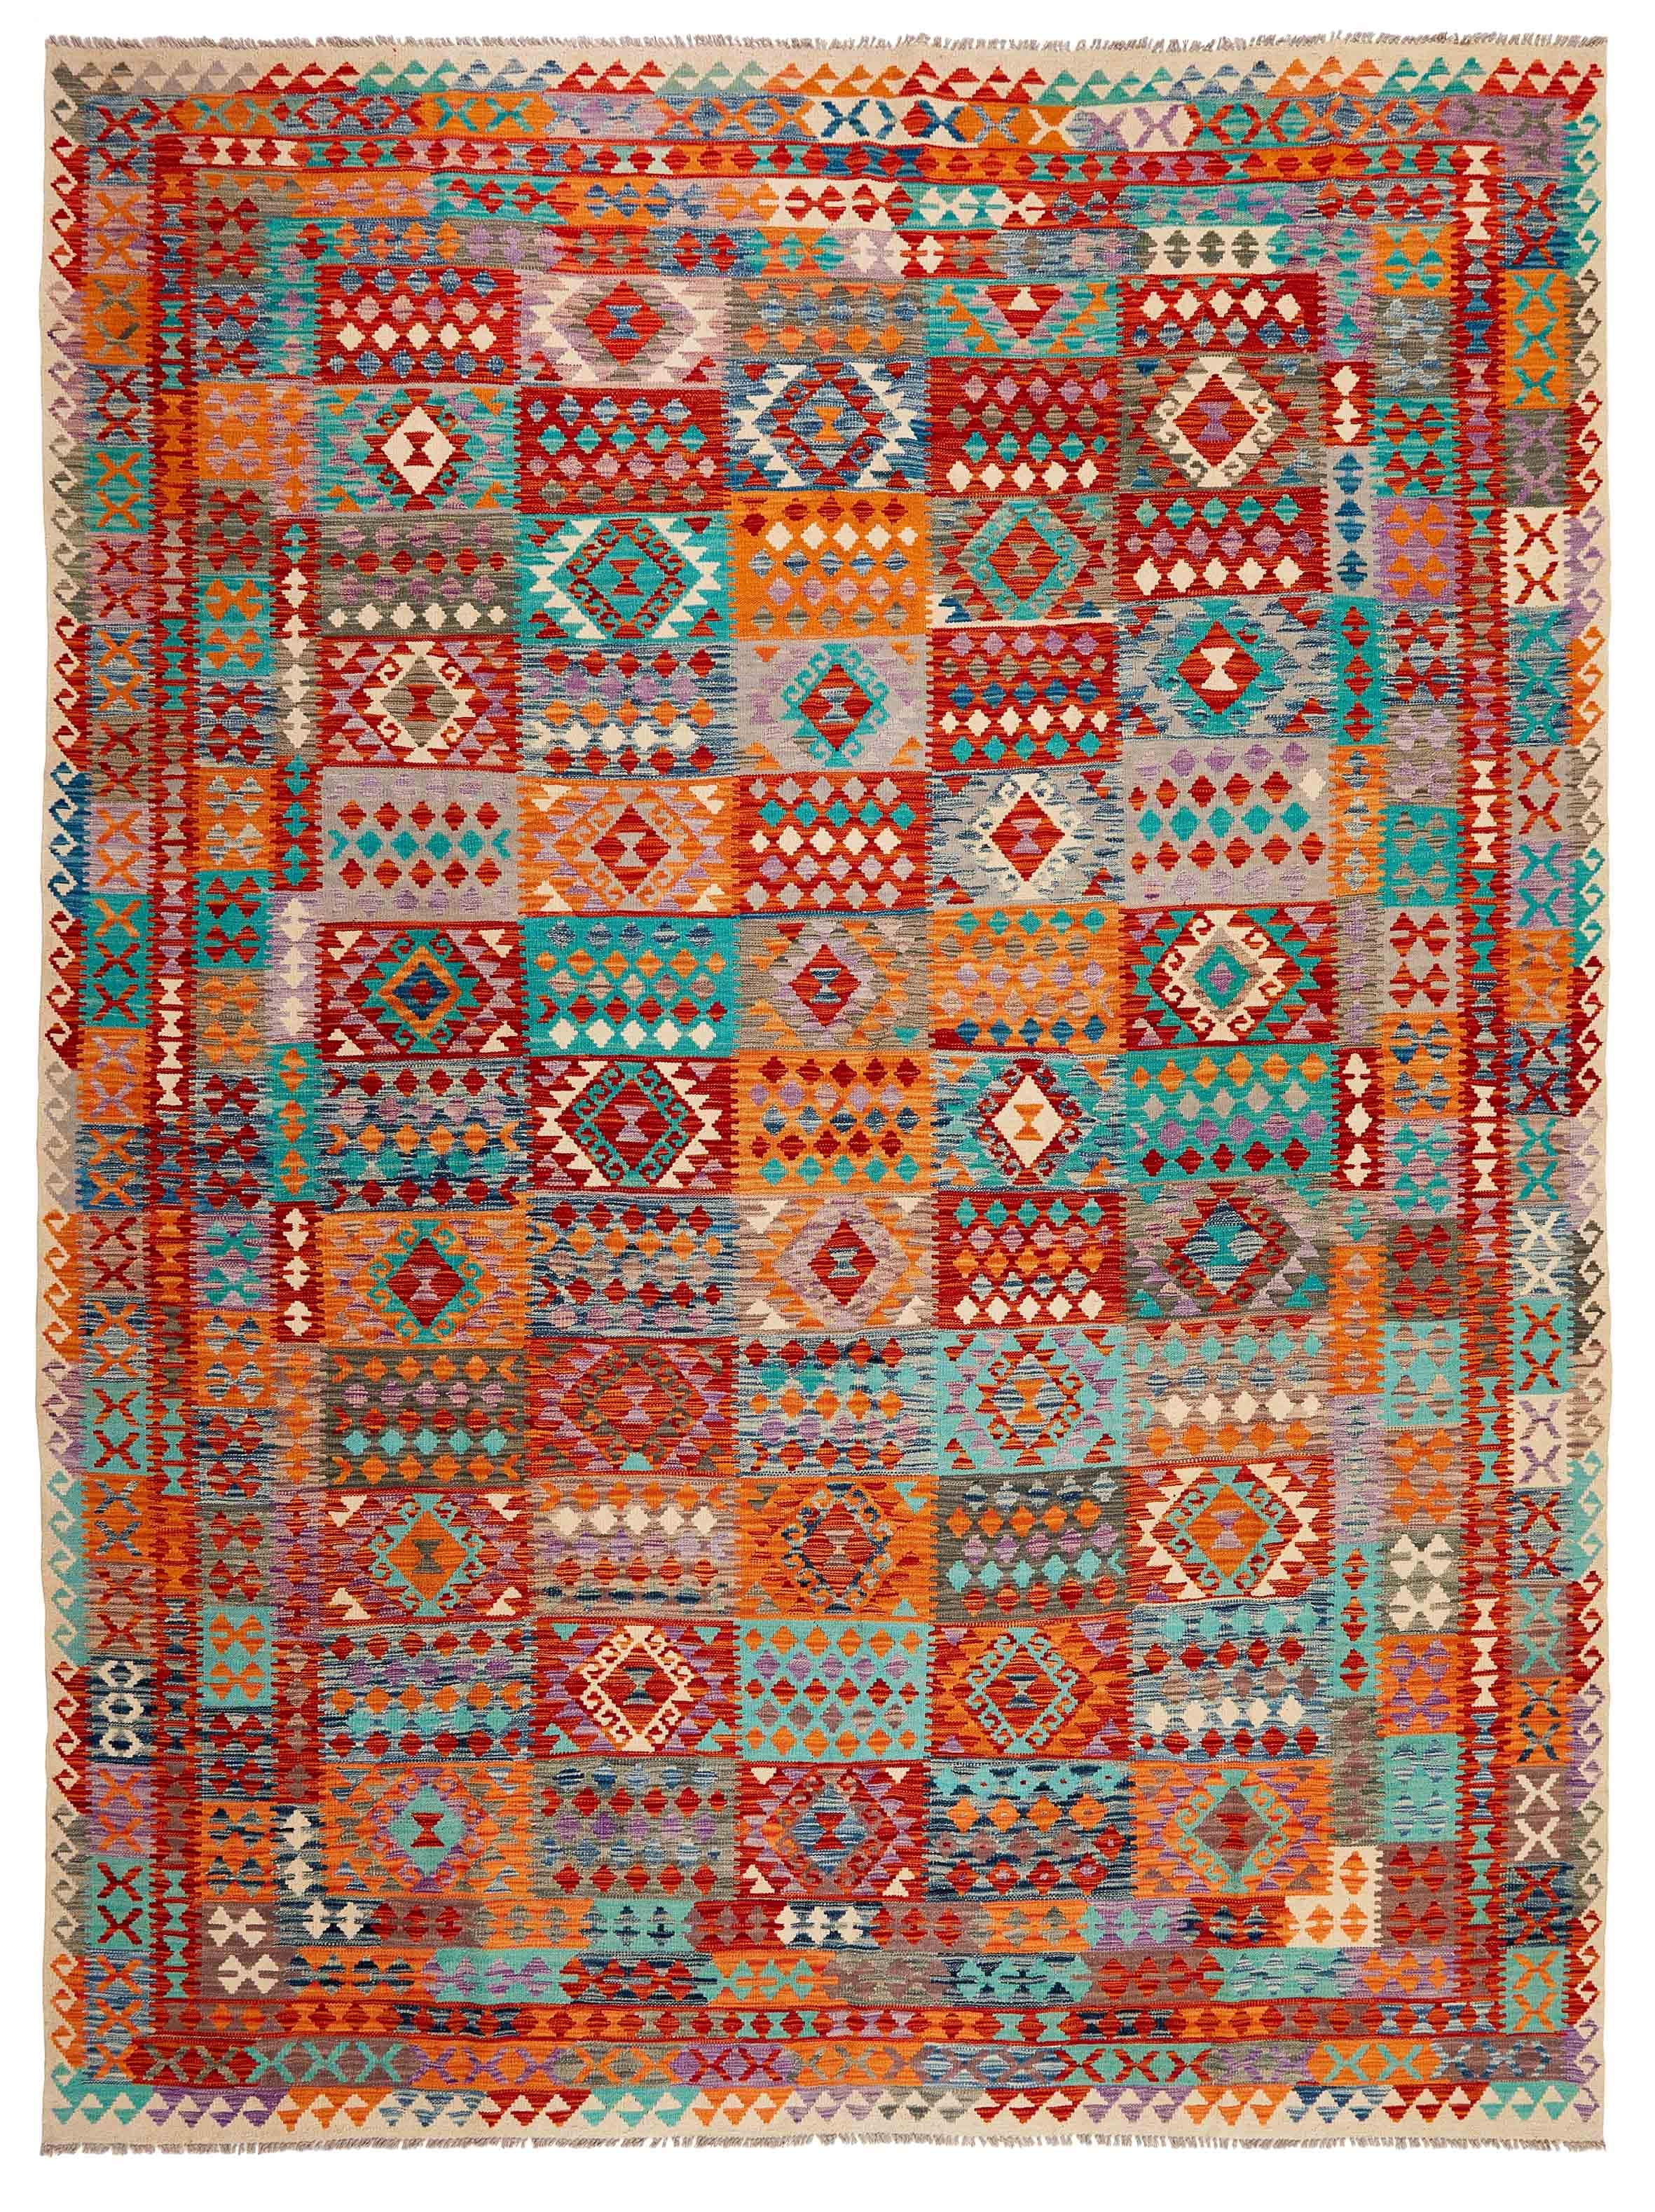 Oriental kelim flatweave rug with a geometric design in red, pink, orange, yellow, blue, green, purple, beige, brown and black